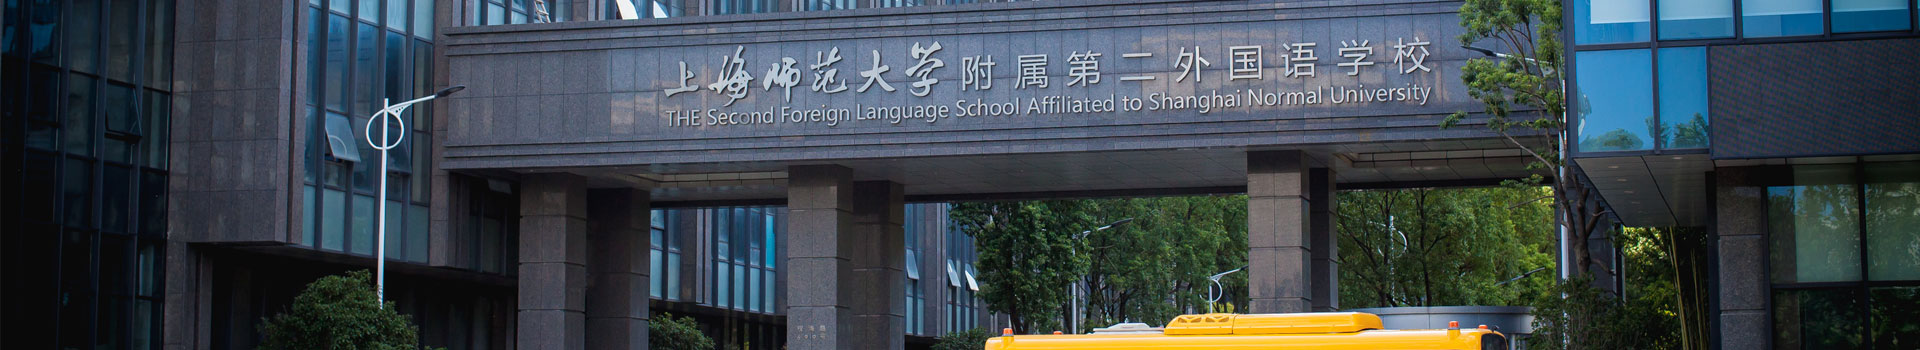 上海师范大学附属第二外国语学校国际部